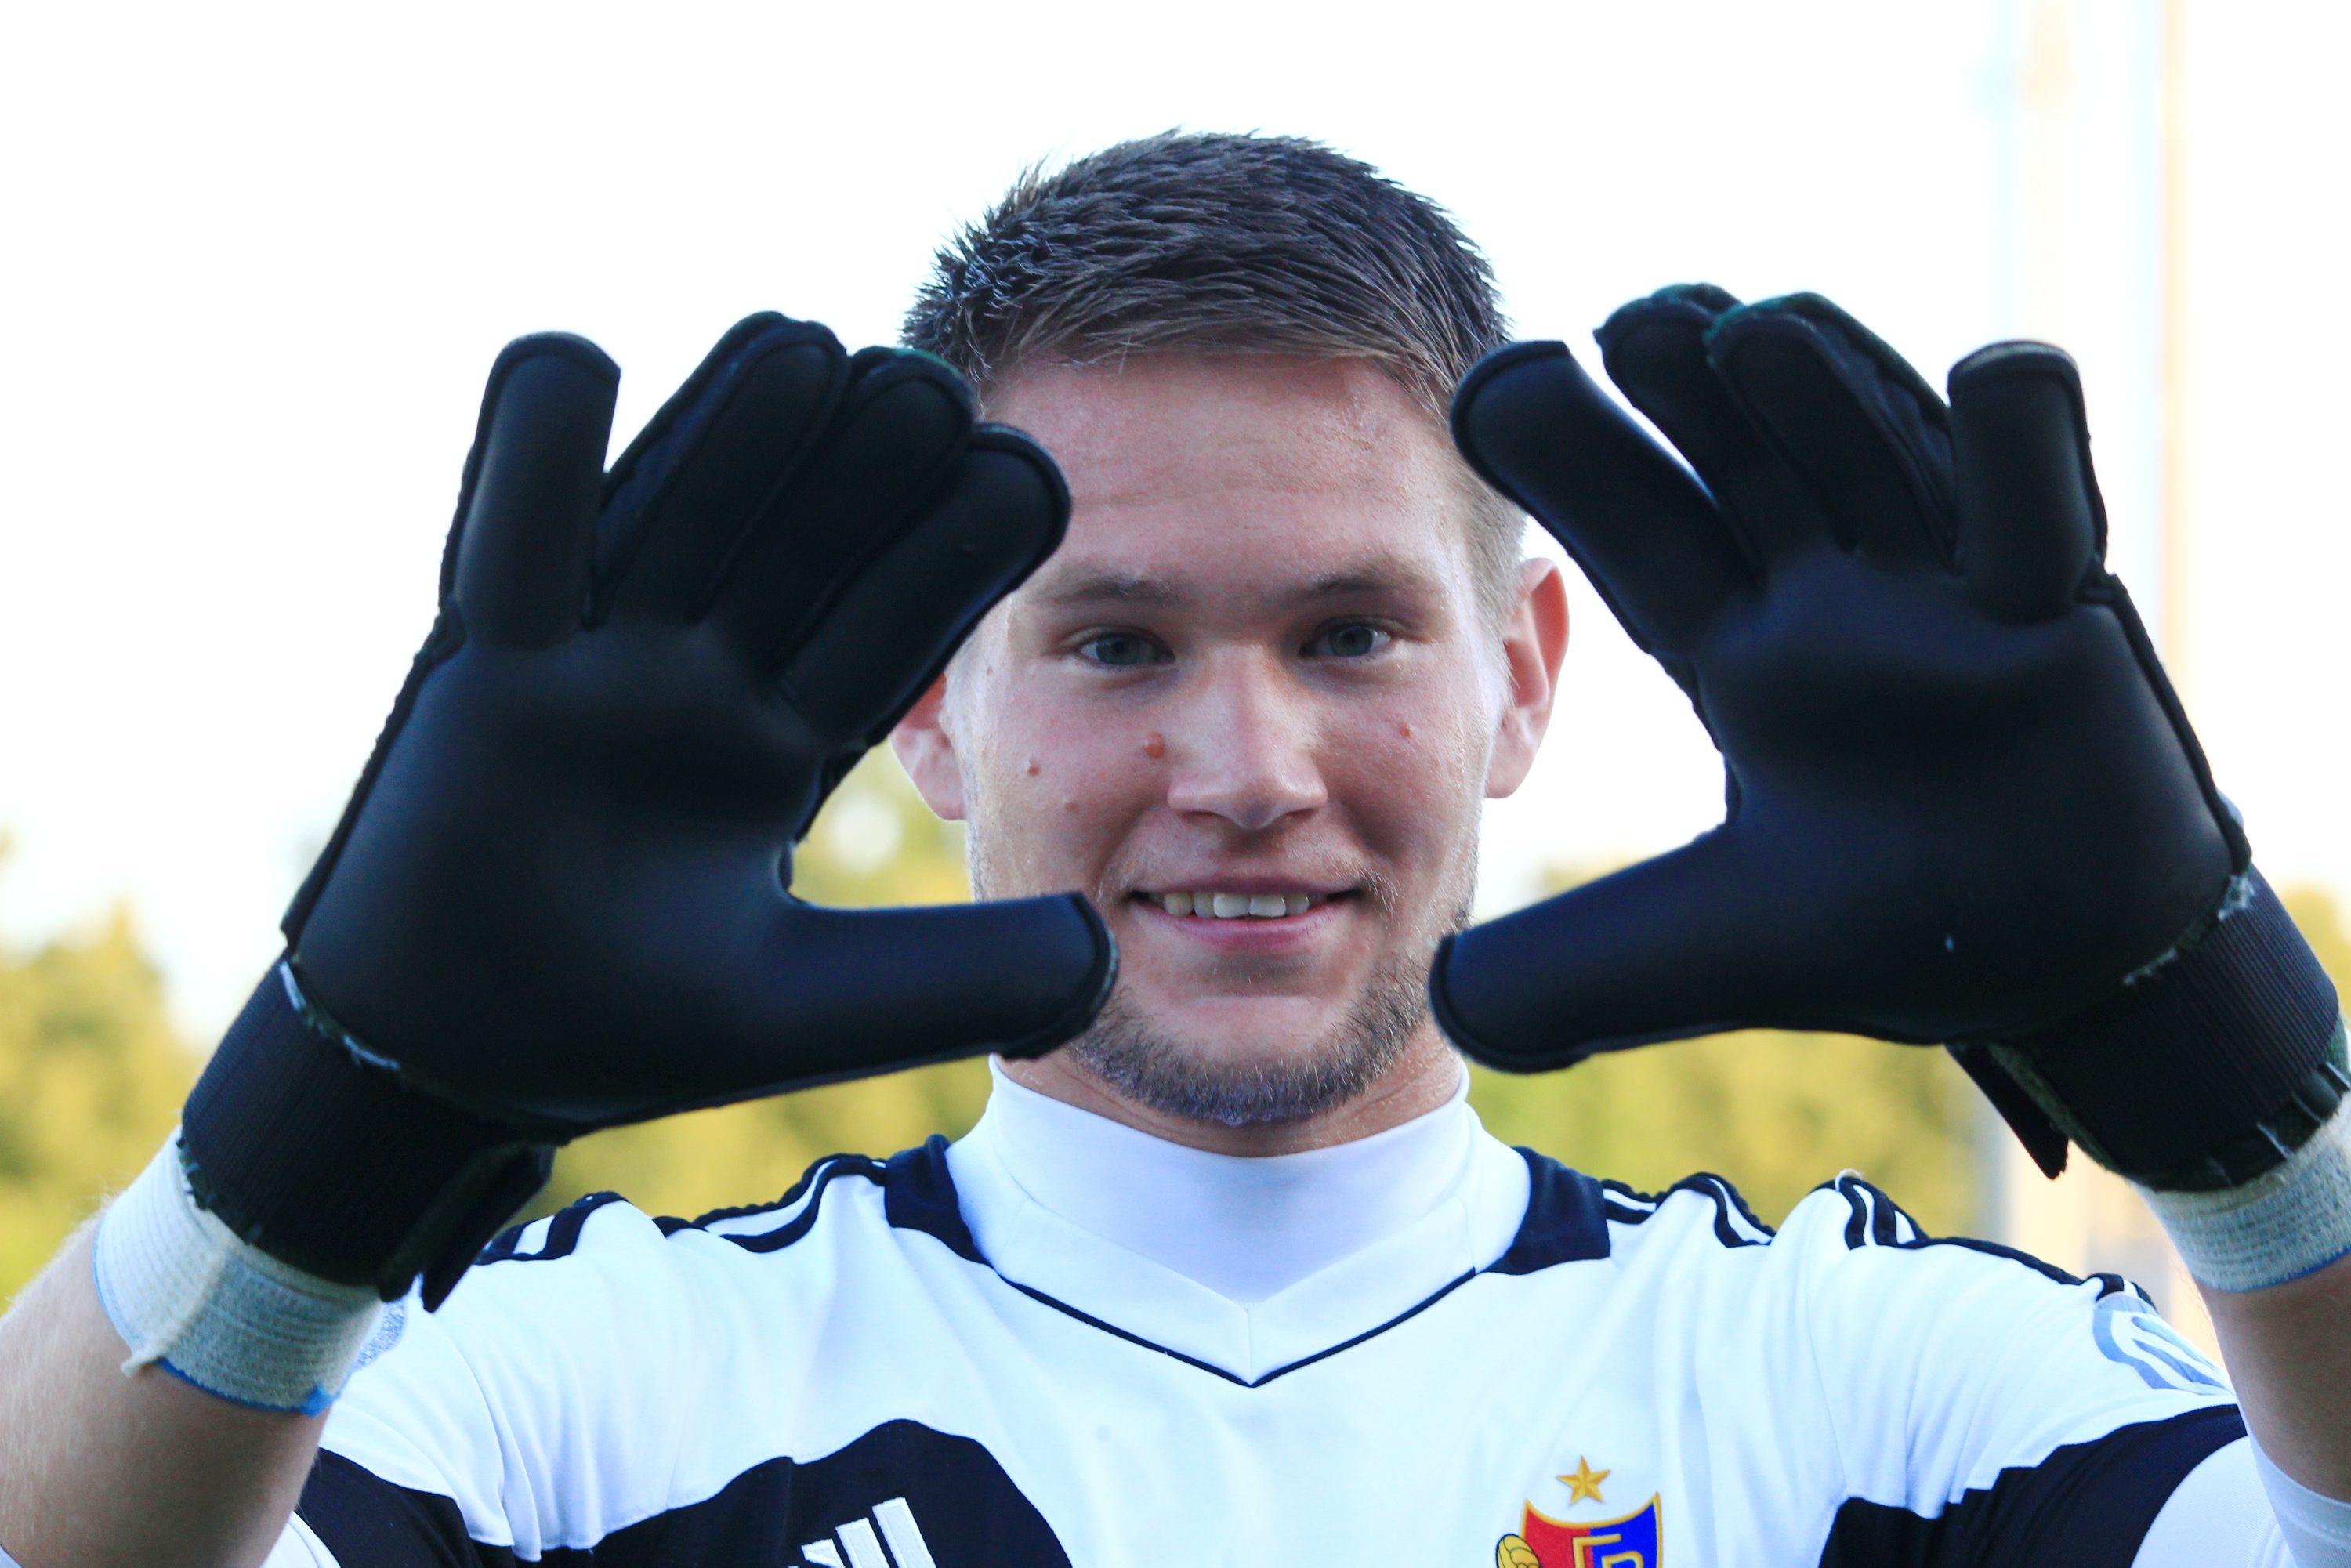 Grosse, schwarze Torwart-Handschuhe hat er: Tomas Vaclik, der neue Goalie beim FC Basel. (Bild: Anton Geisser)